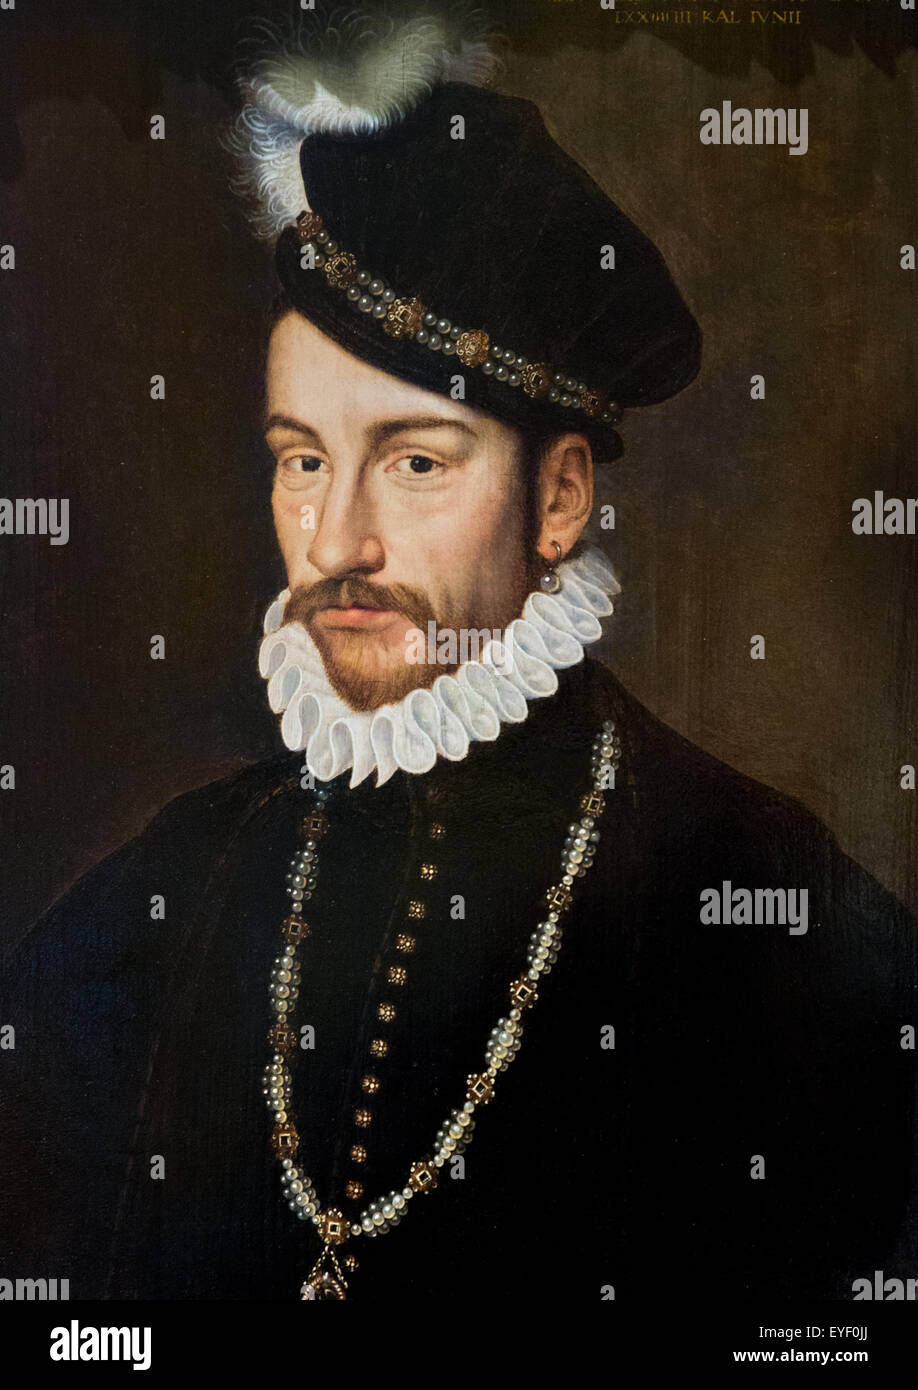 Retrato de Carlos IX, Rey de Francia, según Francois Clouet 07/12/2013 - Colección del siglo XVI. Foto de stock